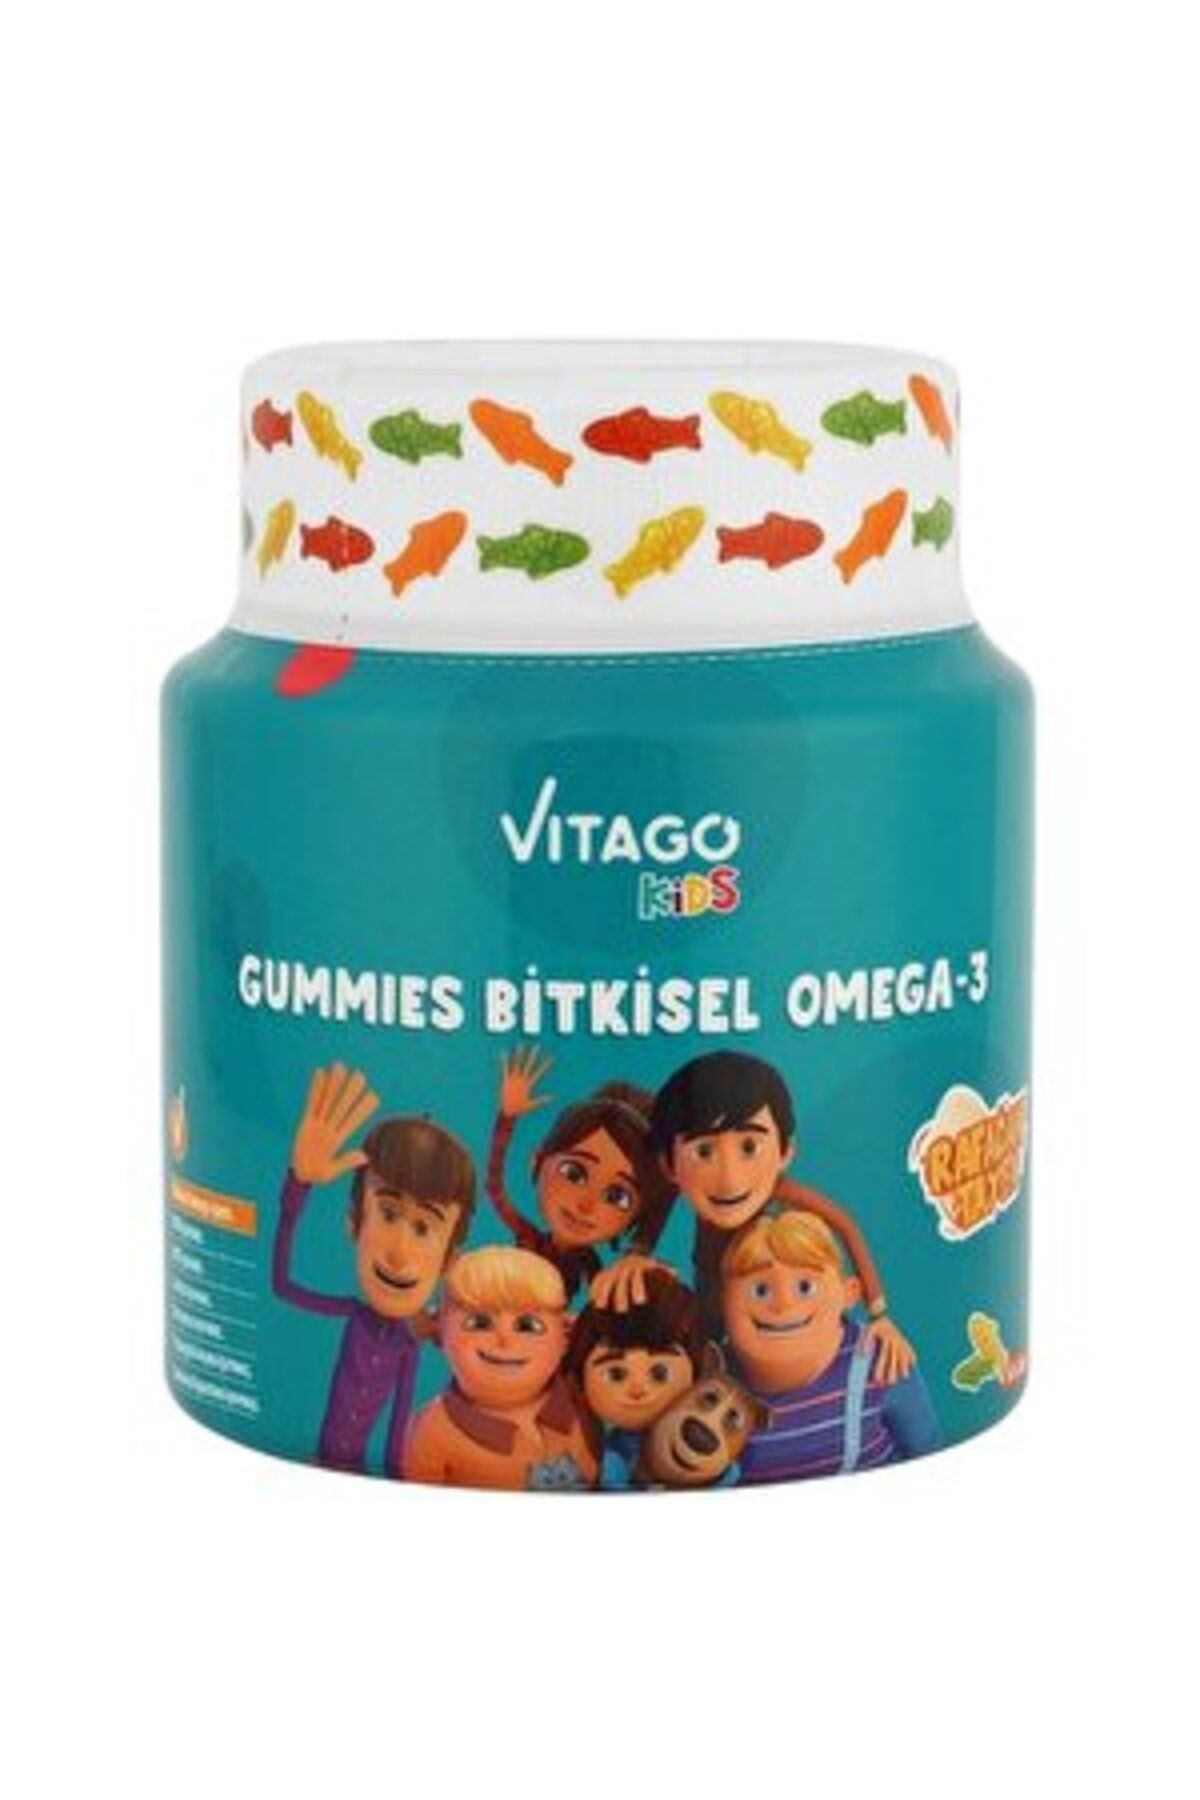 Vitago Kids Gummies Bitkisel Omega-3 İçeren 60 Adet Çiğnenebilir Gummy Jel ( 2 ADET )